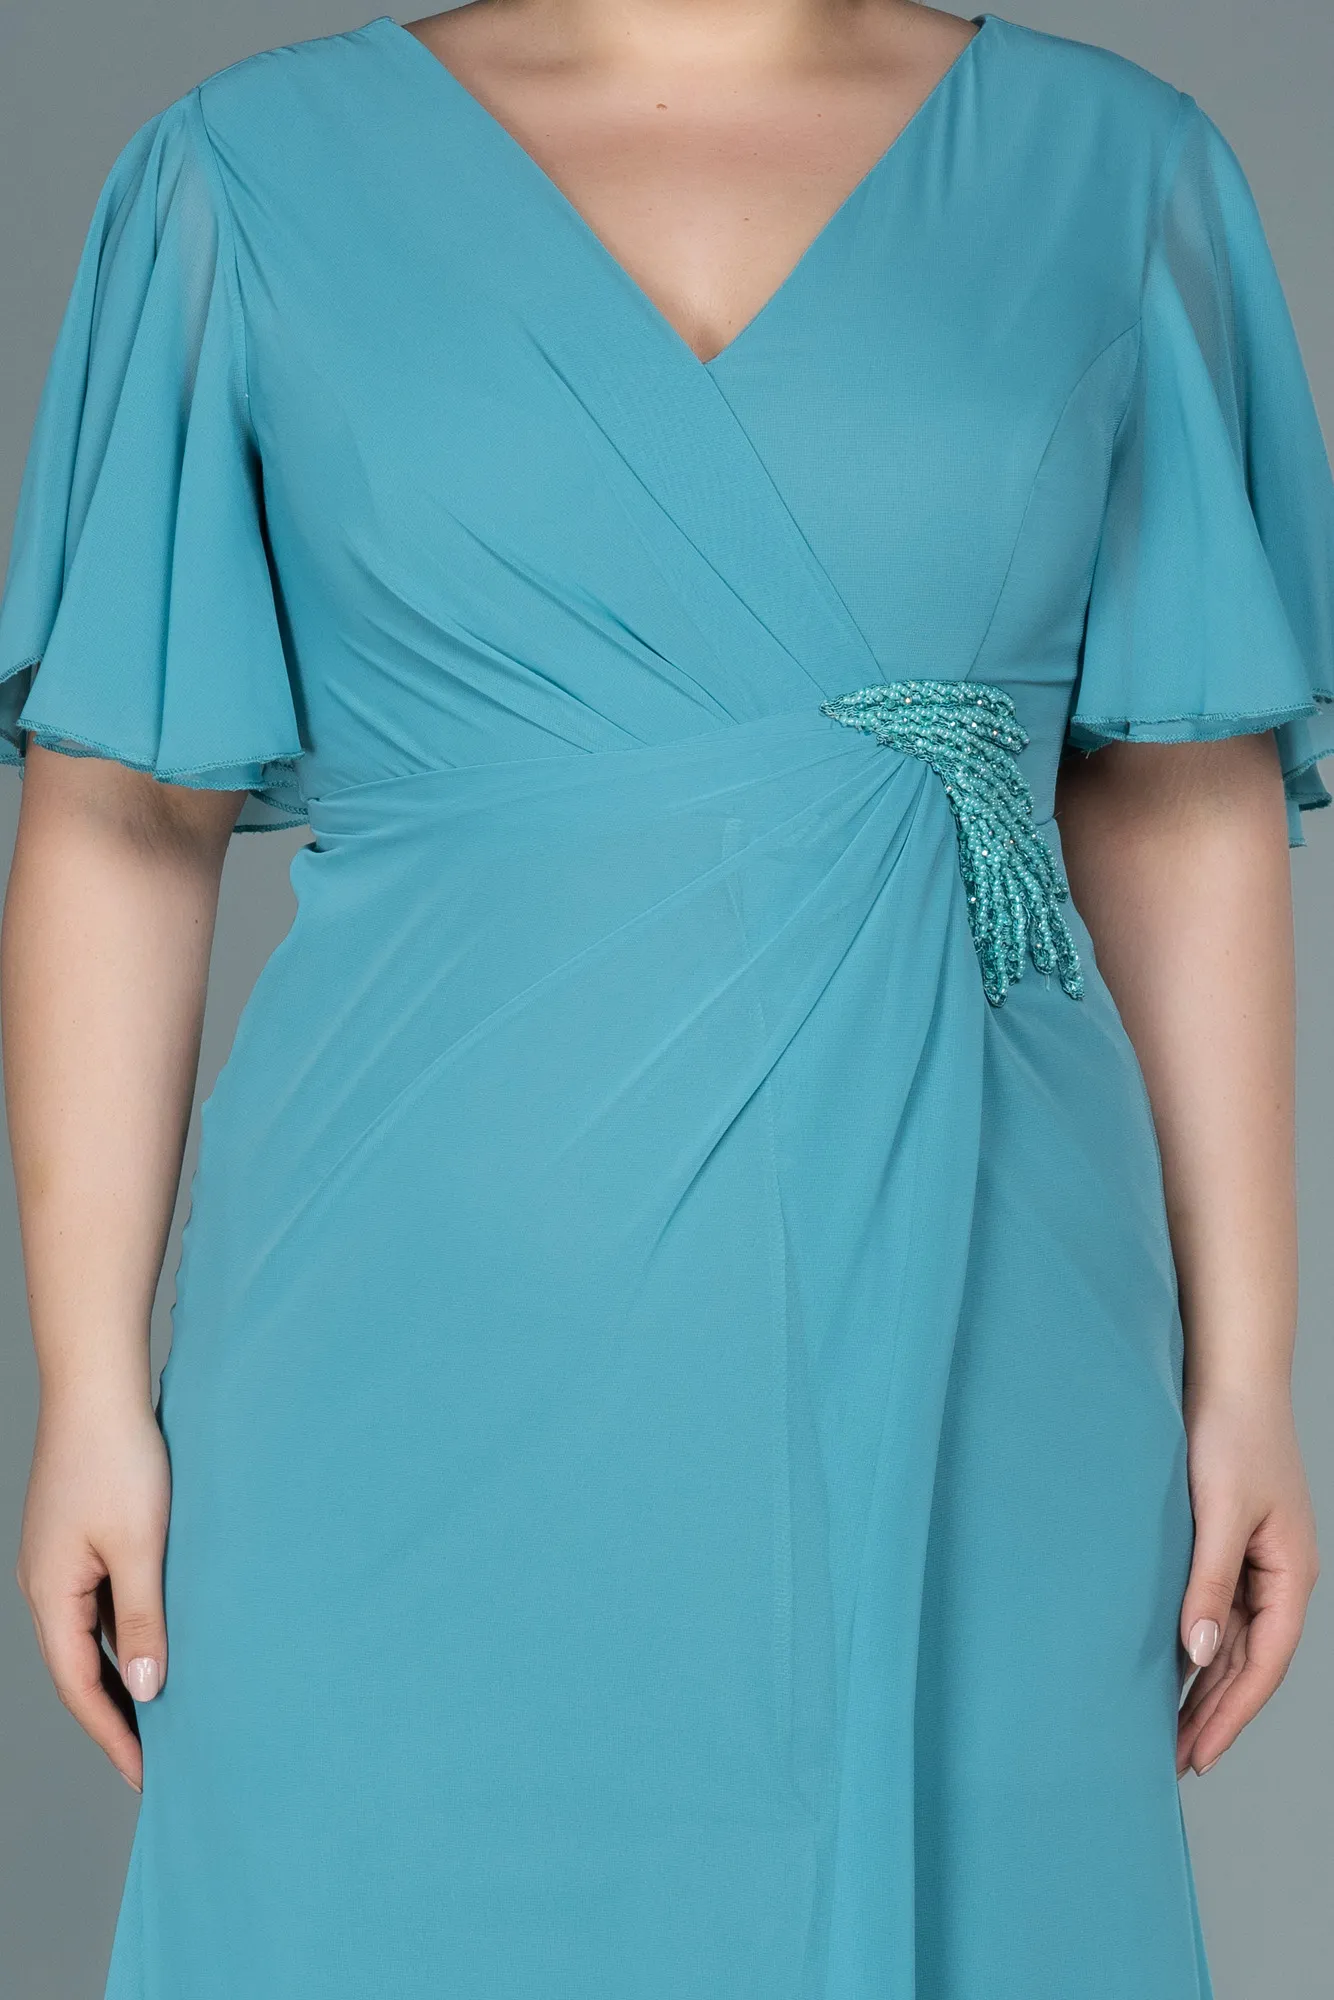 Mint-Long Chiffon Oversized Evening Dress ABU2748